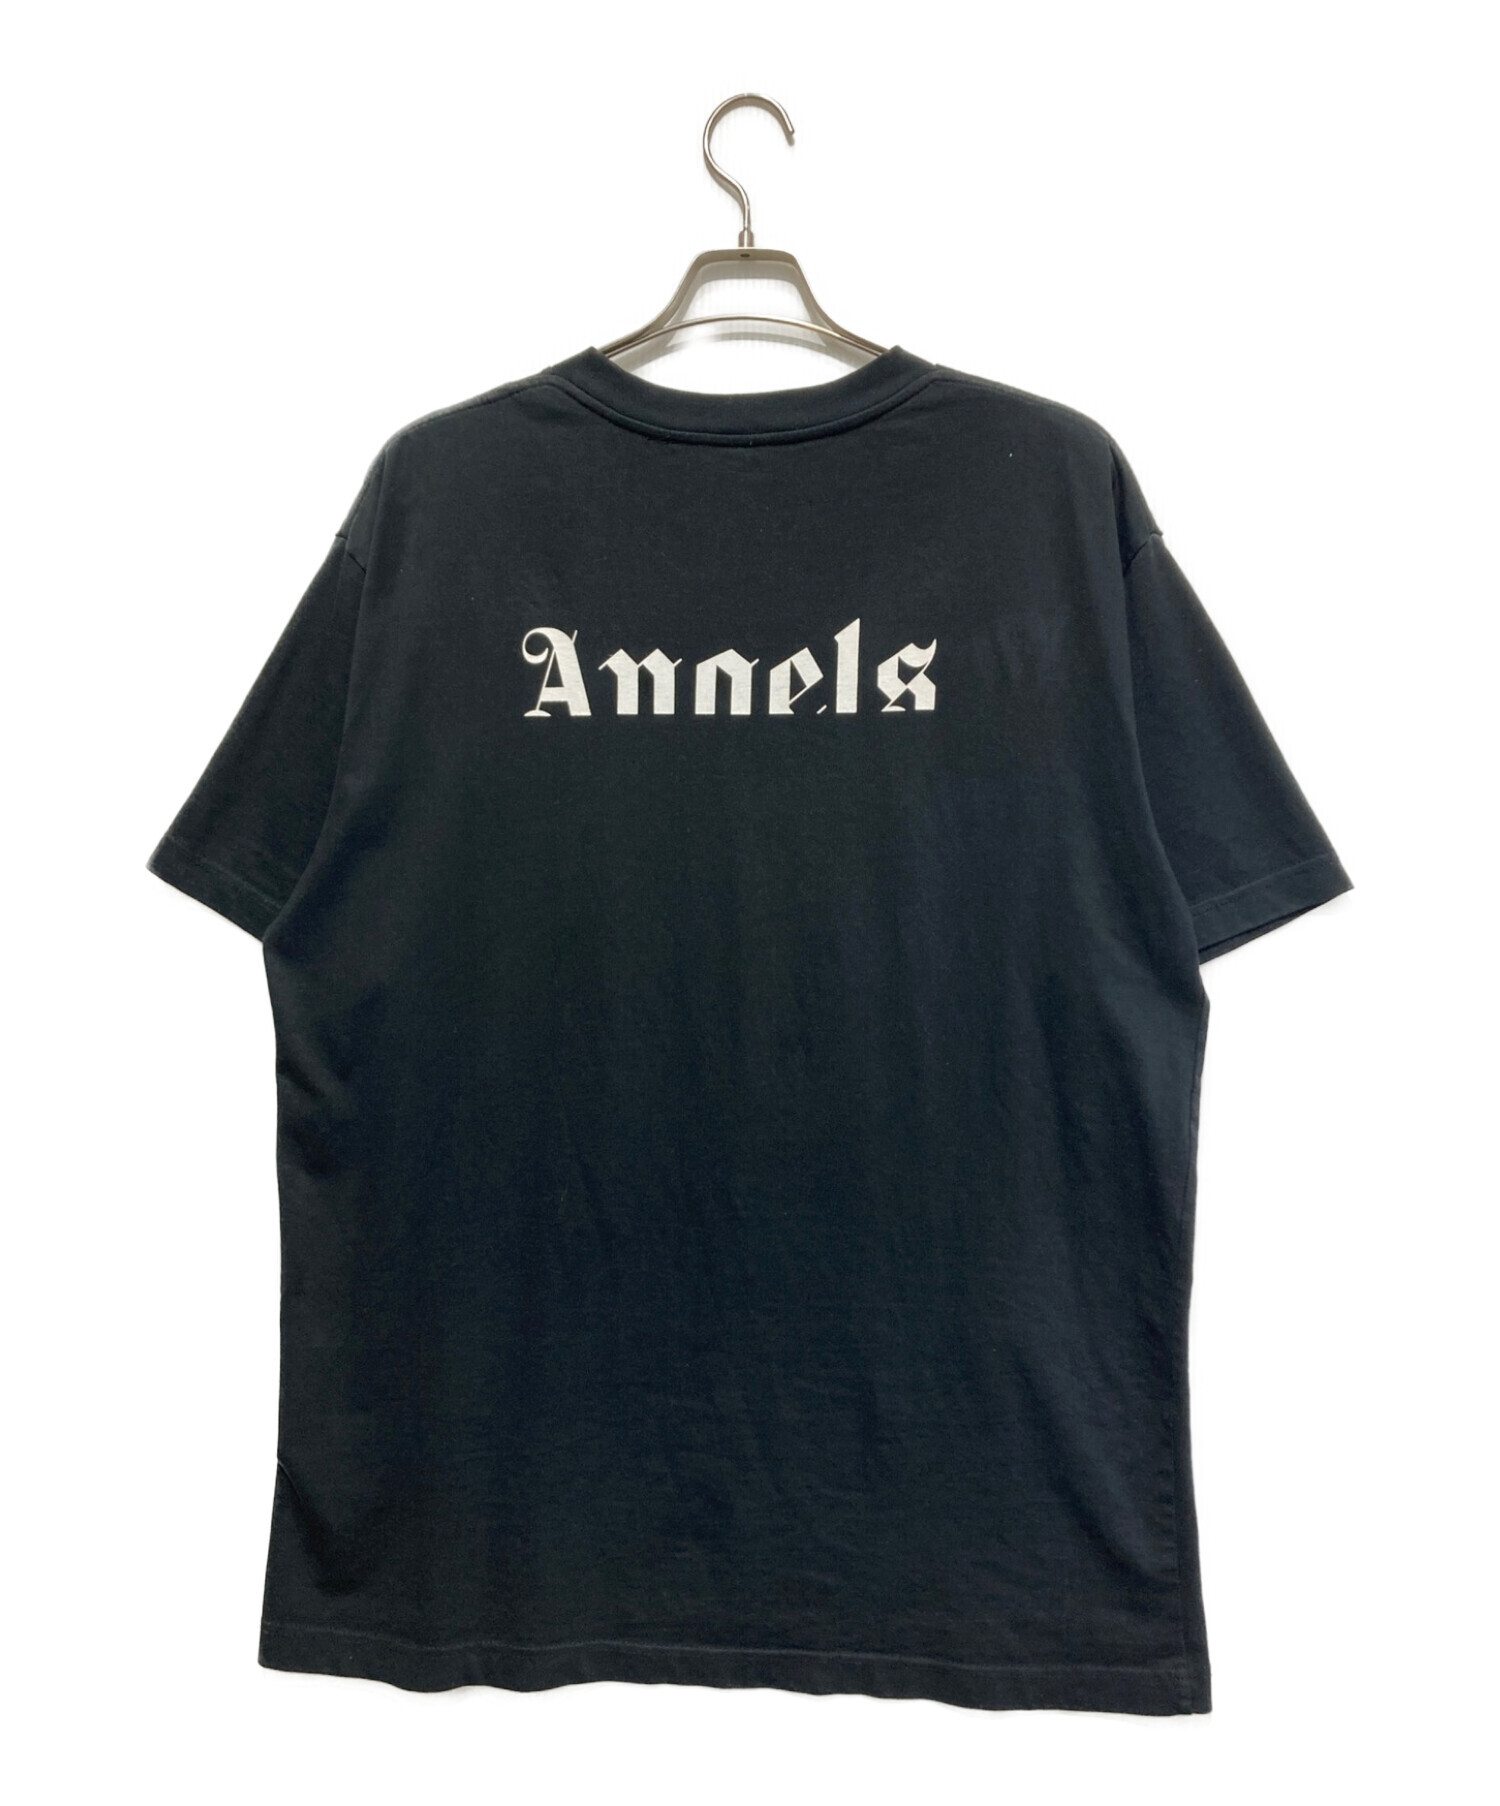 MONCLER (モンクレール) Palm Angels (パーム エンジェルス) コラボTシャツ ブラック サイズ:SIZE XL